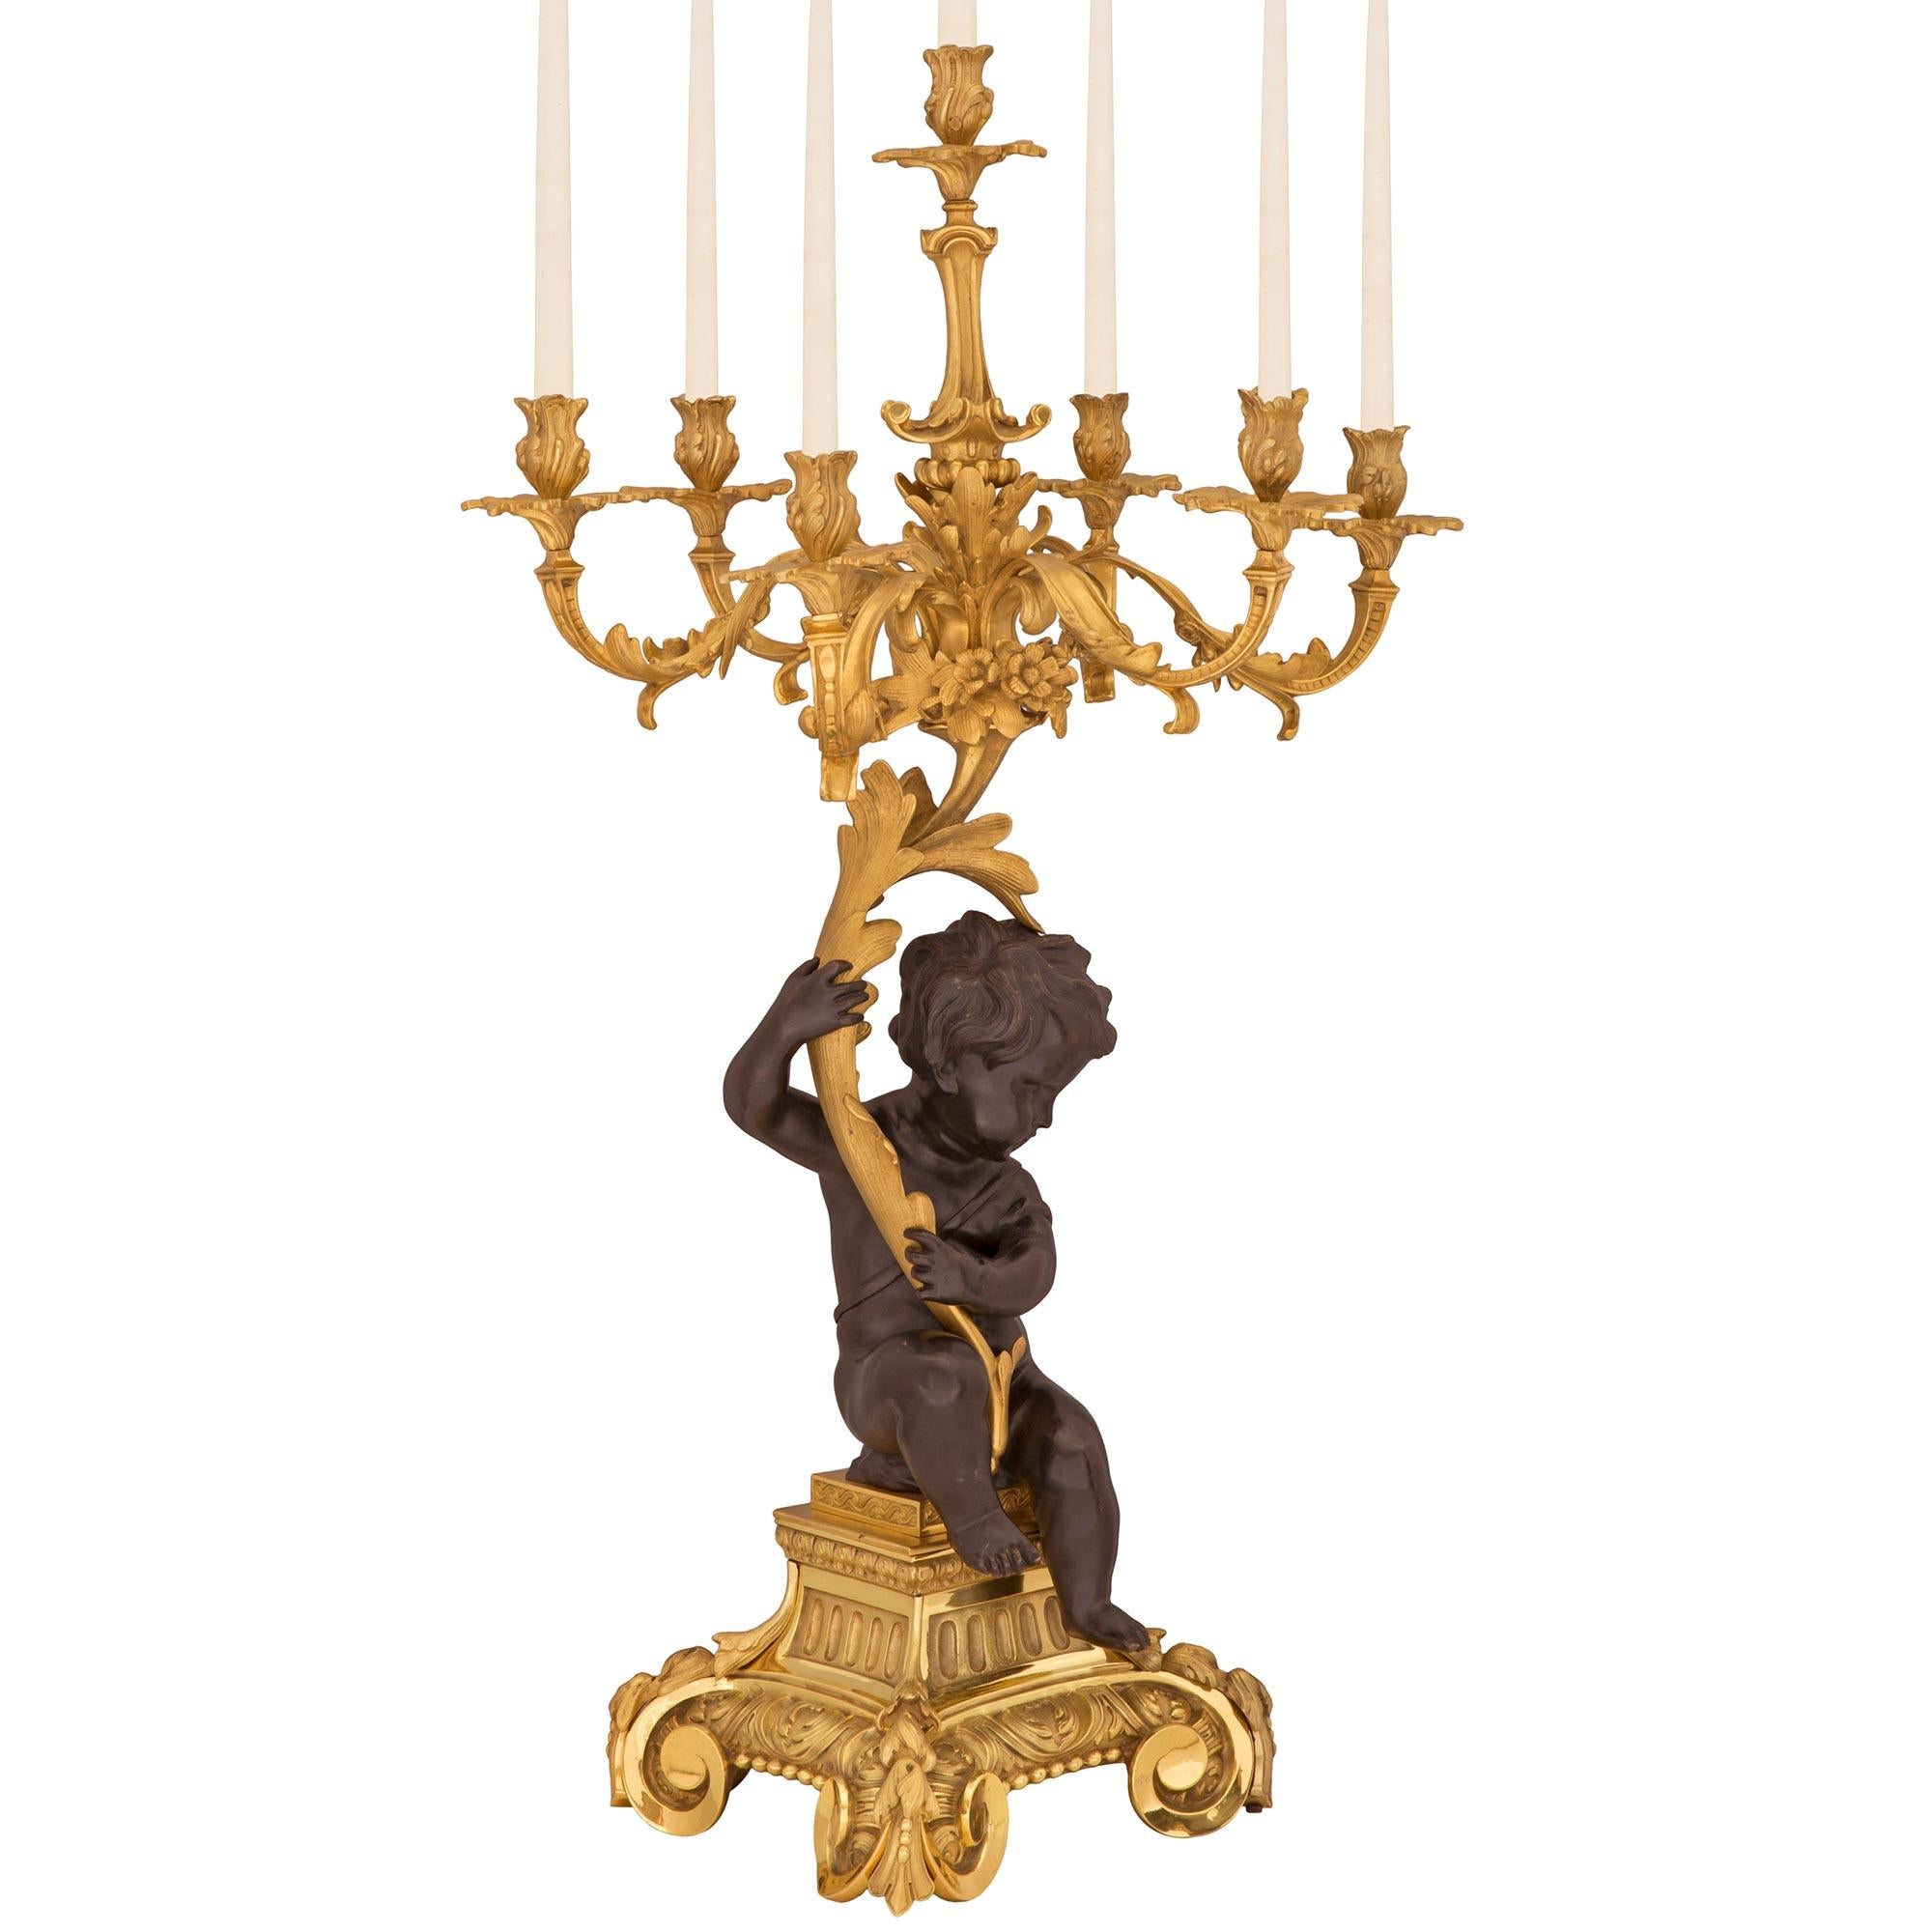 Une paire spectaculaire et monumentale de candélabres français du 19ème siècle, de style Louis XV, en bronze doré et patiné. Chaque candélabre à sept bras est surélevé par une impressionnante base carrée en bronze doré avec de superbes supports à